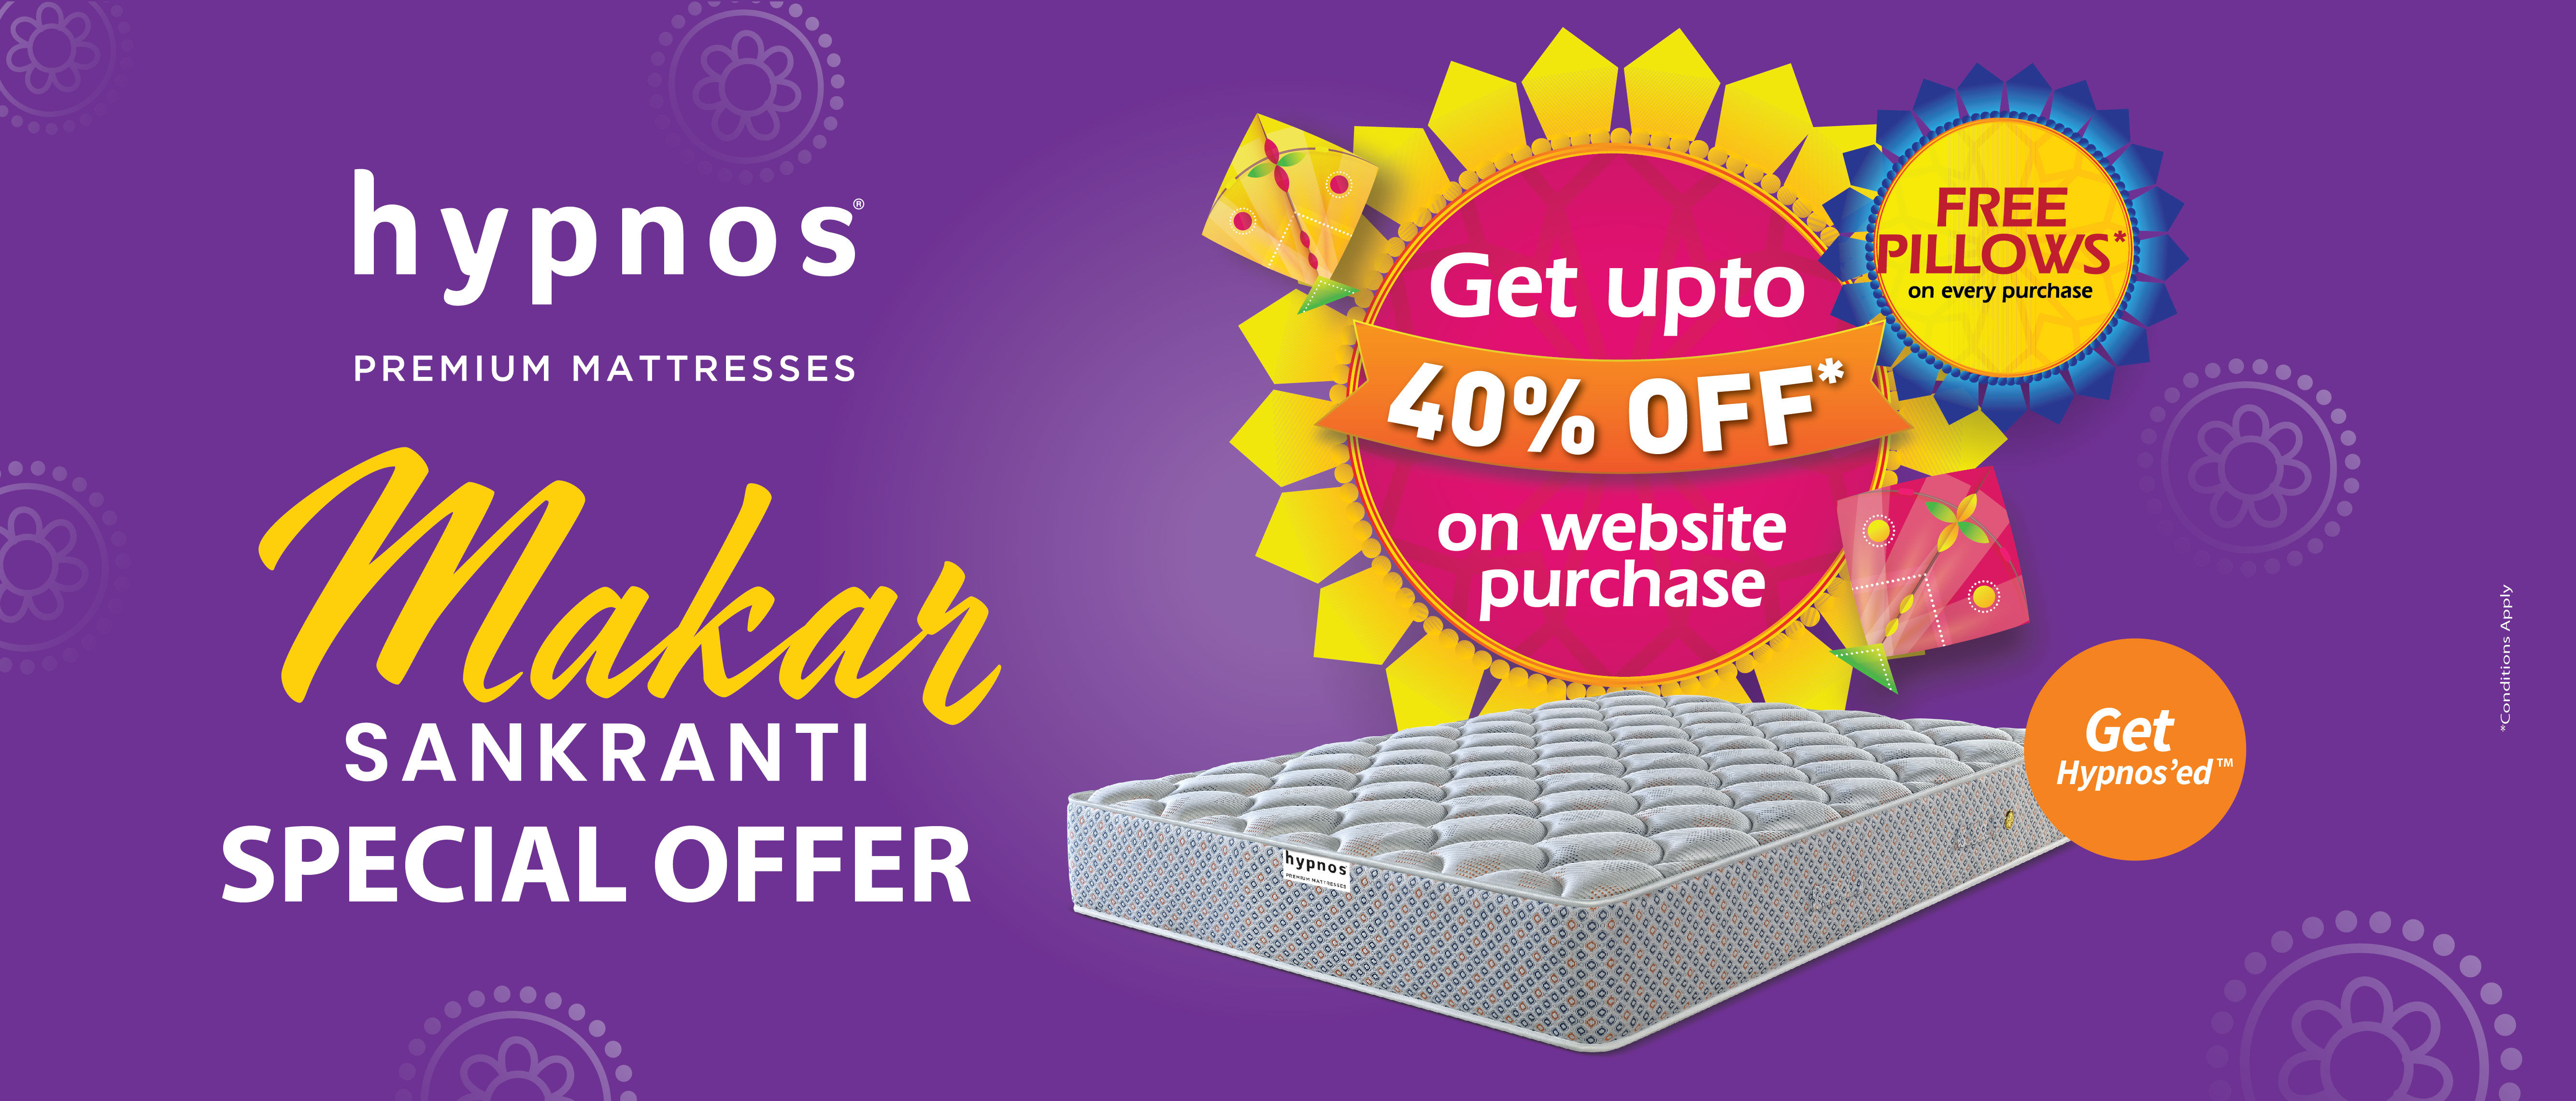 Allure mattress upto 40% discount